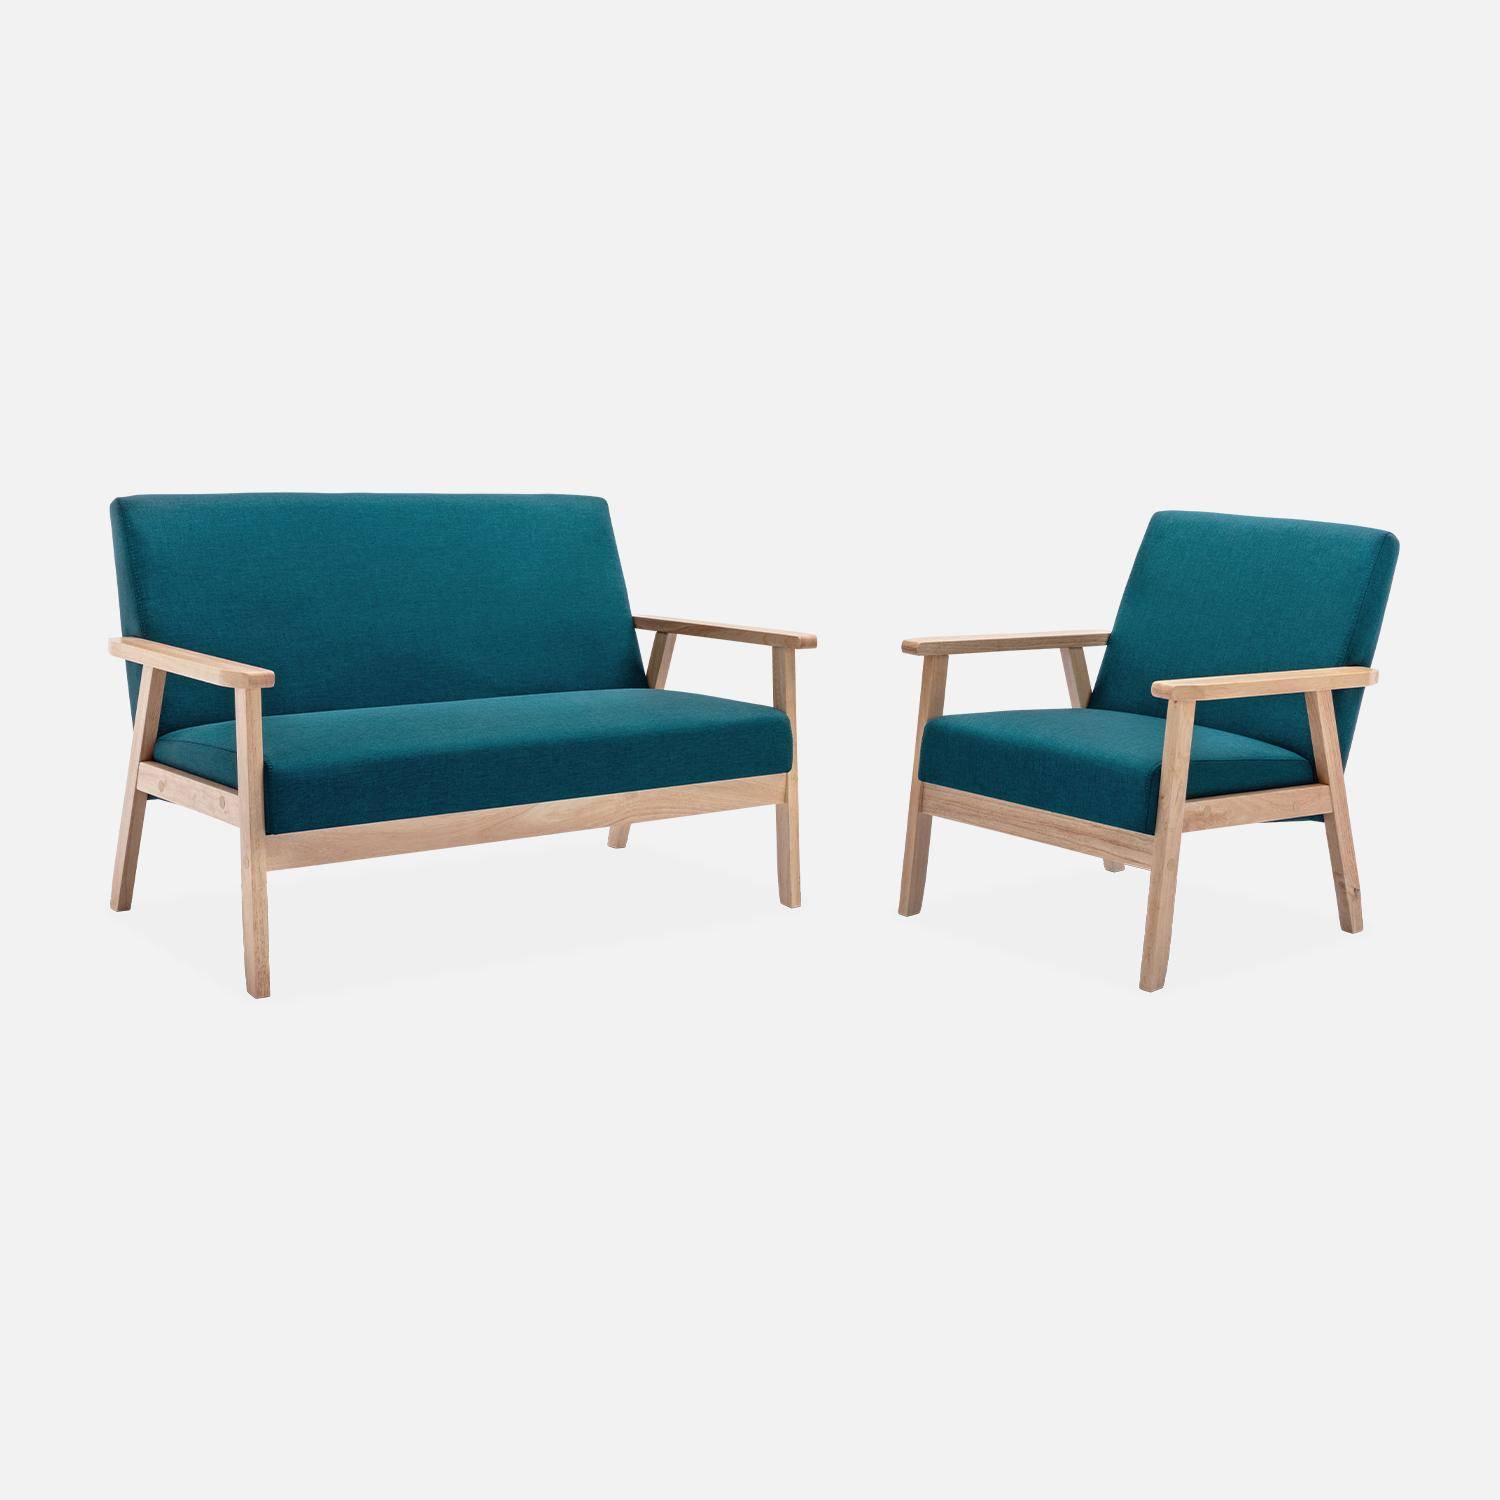 Banquette et fauteuil scandinave en bois et tissu bleu pétrole L 114 x l 69,5 x H 73cm Photo1